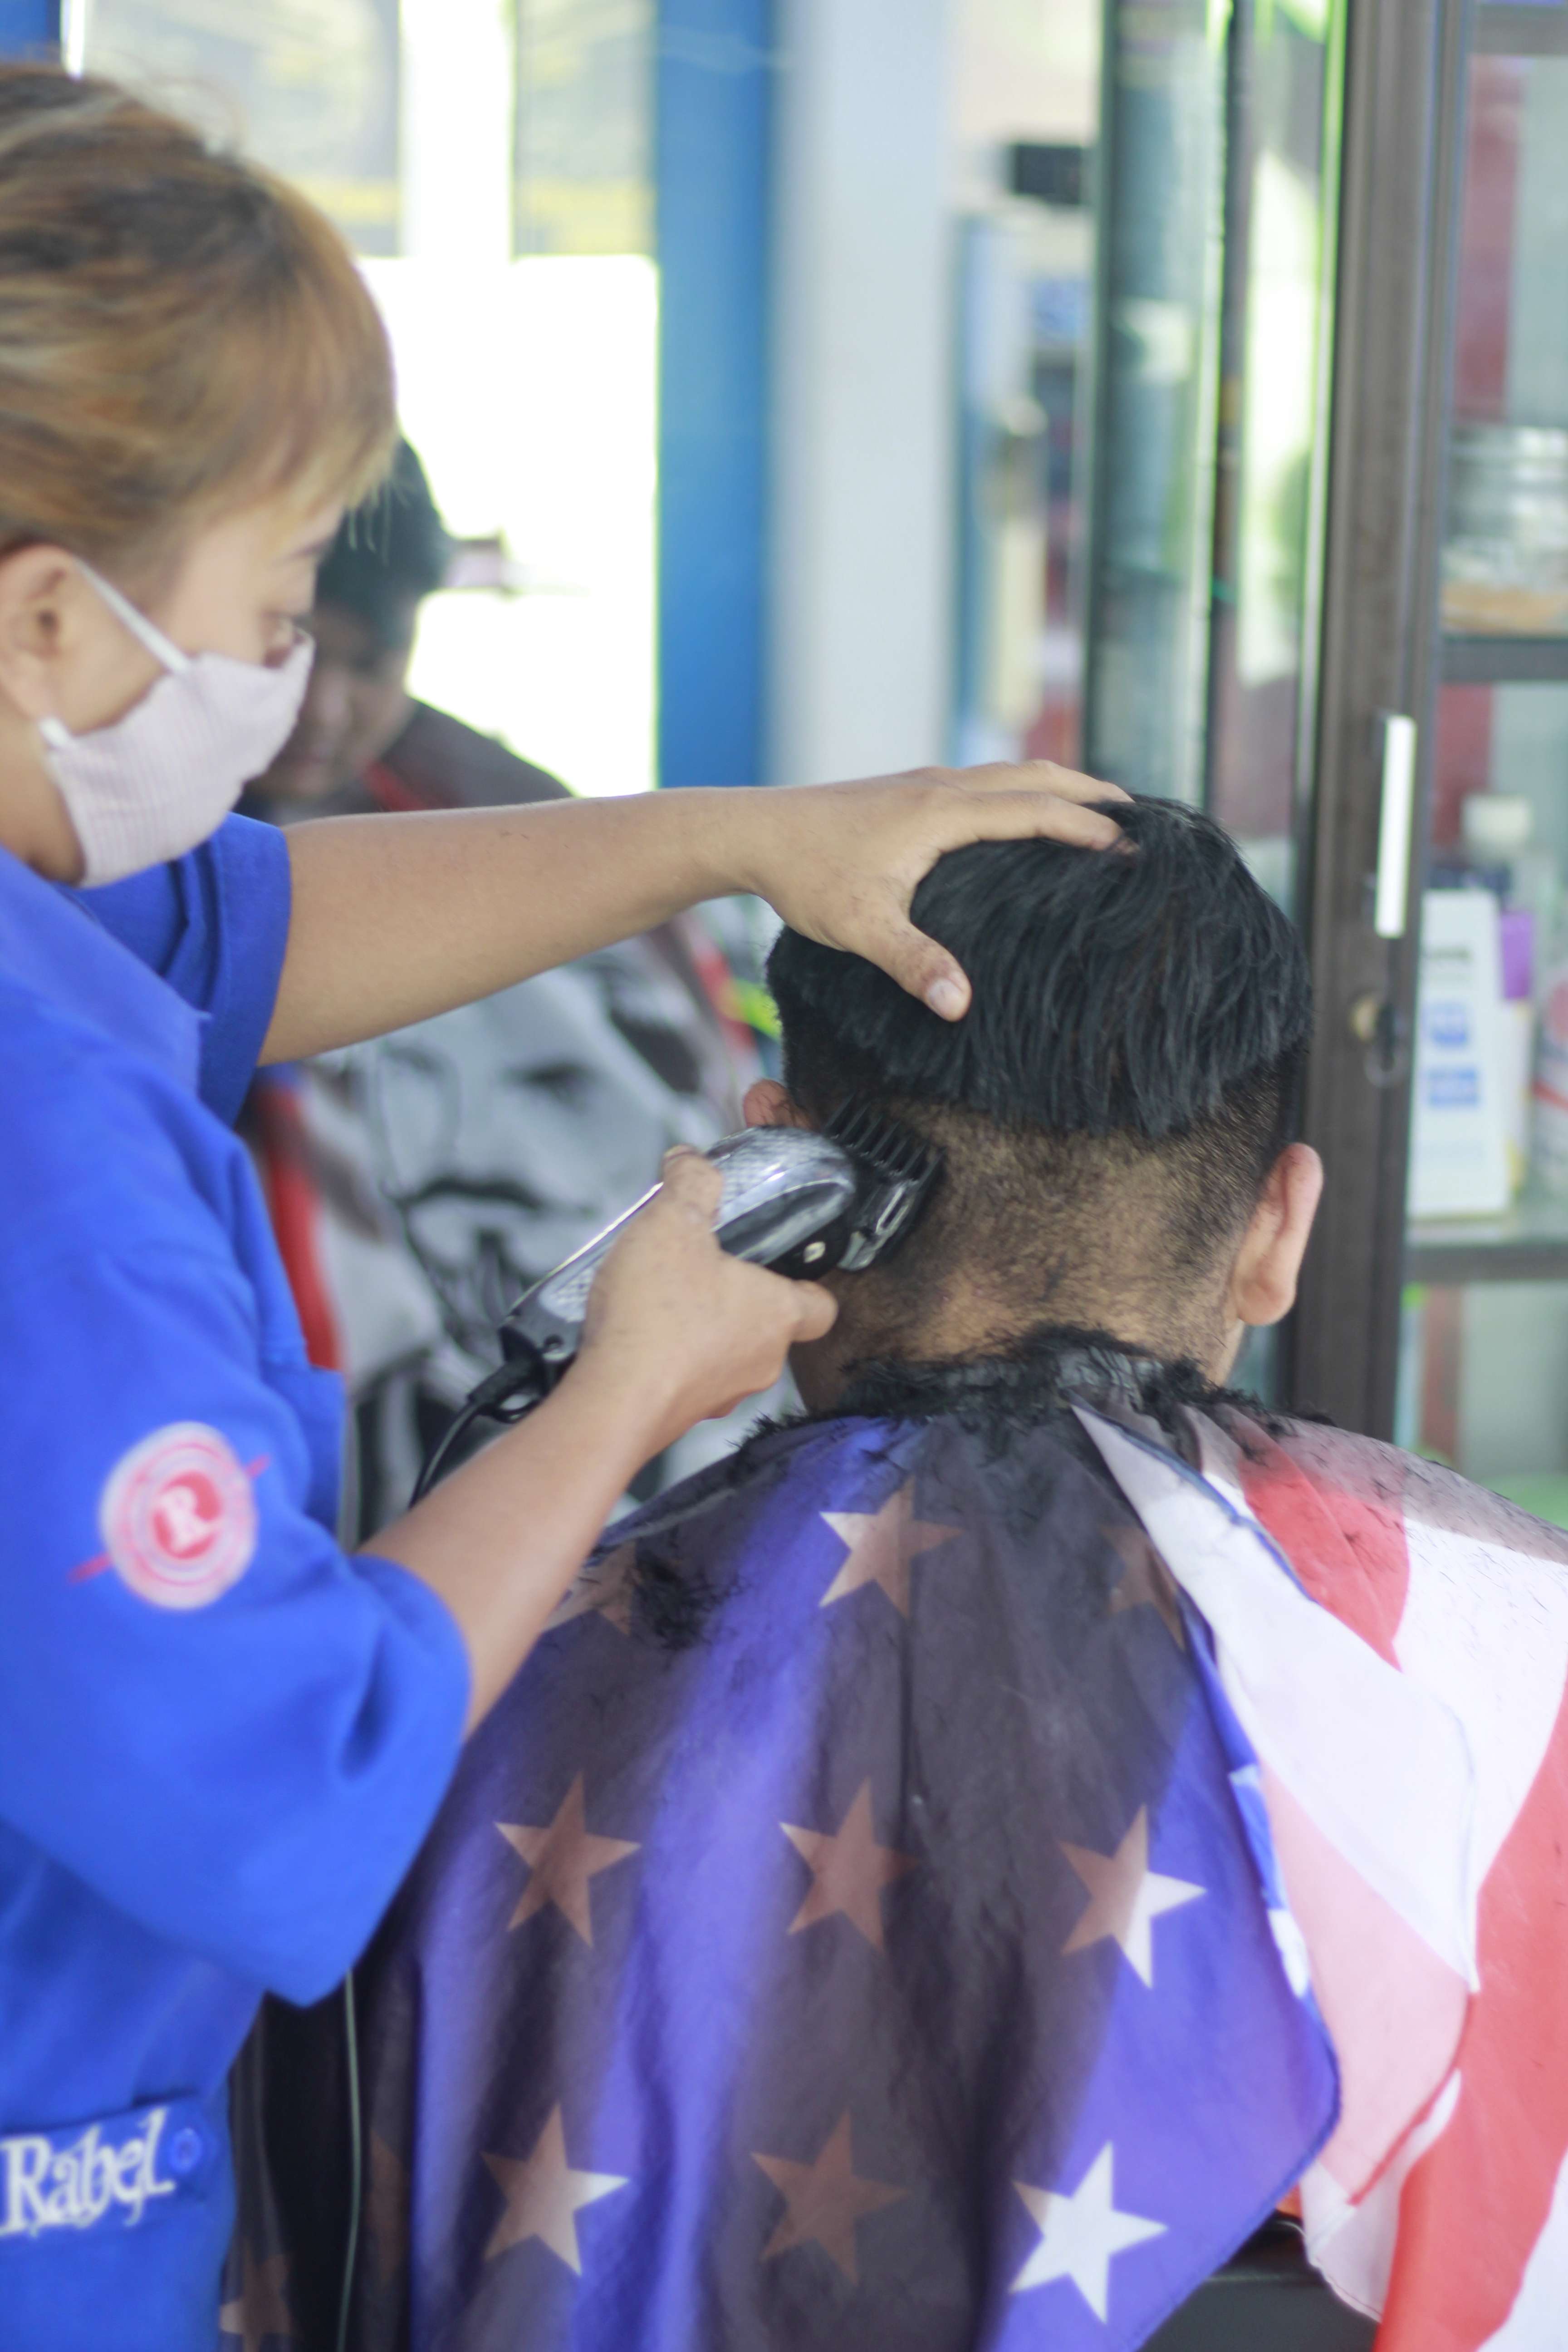 Lokasi Tempat Cukur Rambut Di Kecamatan Lowokwaru Terbaik